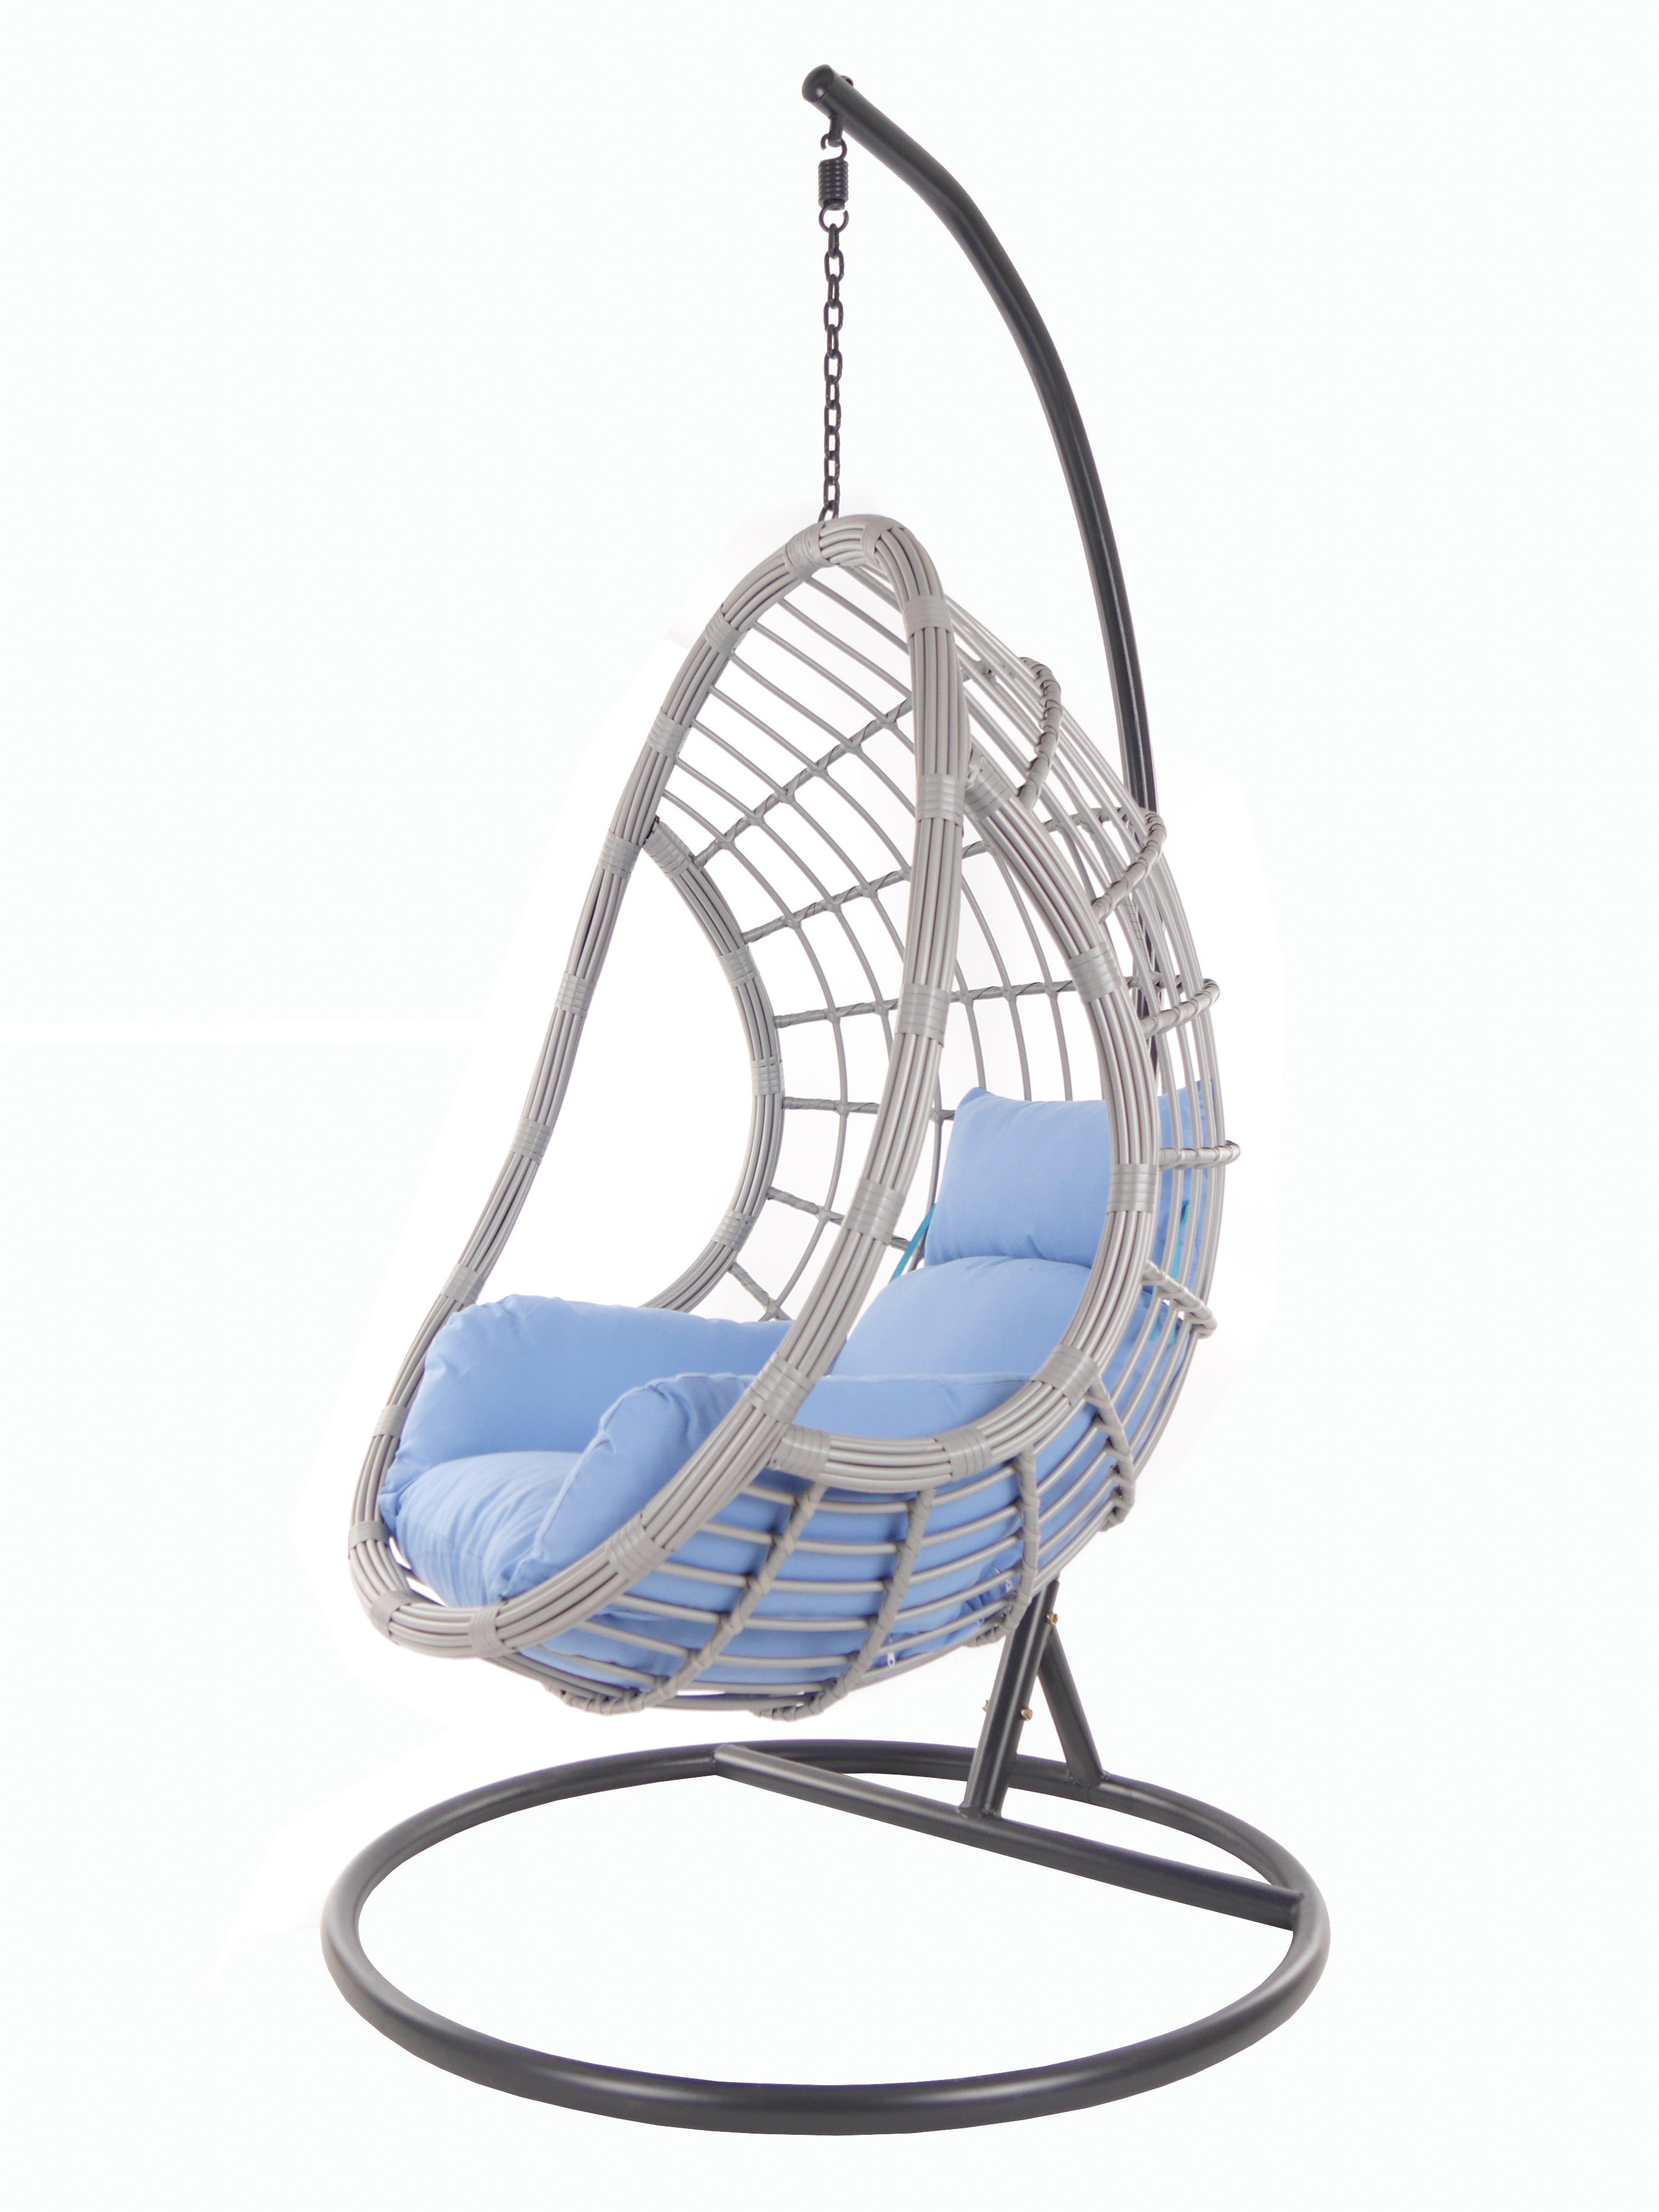 KIDEO Hängesessel PALMANOVA lightgrey, Schwebesessel mit Gestell und Kissen, Swing Chair, Loungemöbel königsblau (3070 royal blue)